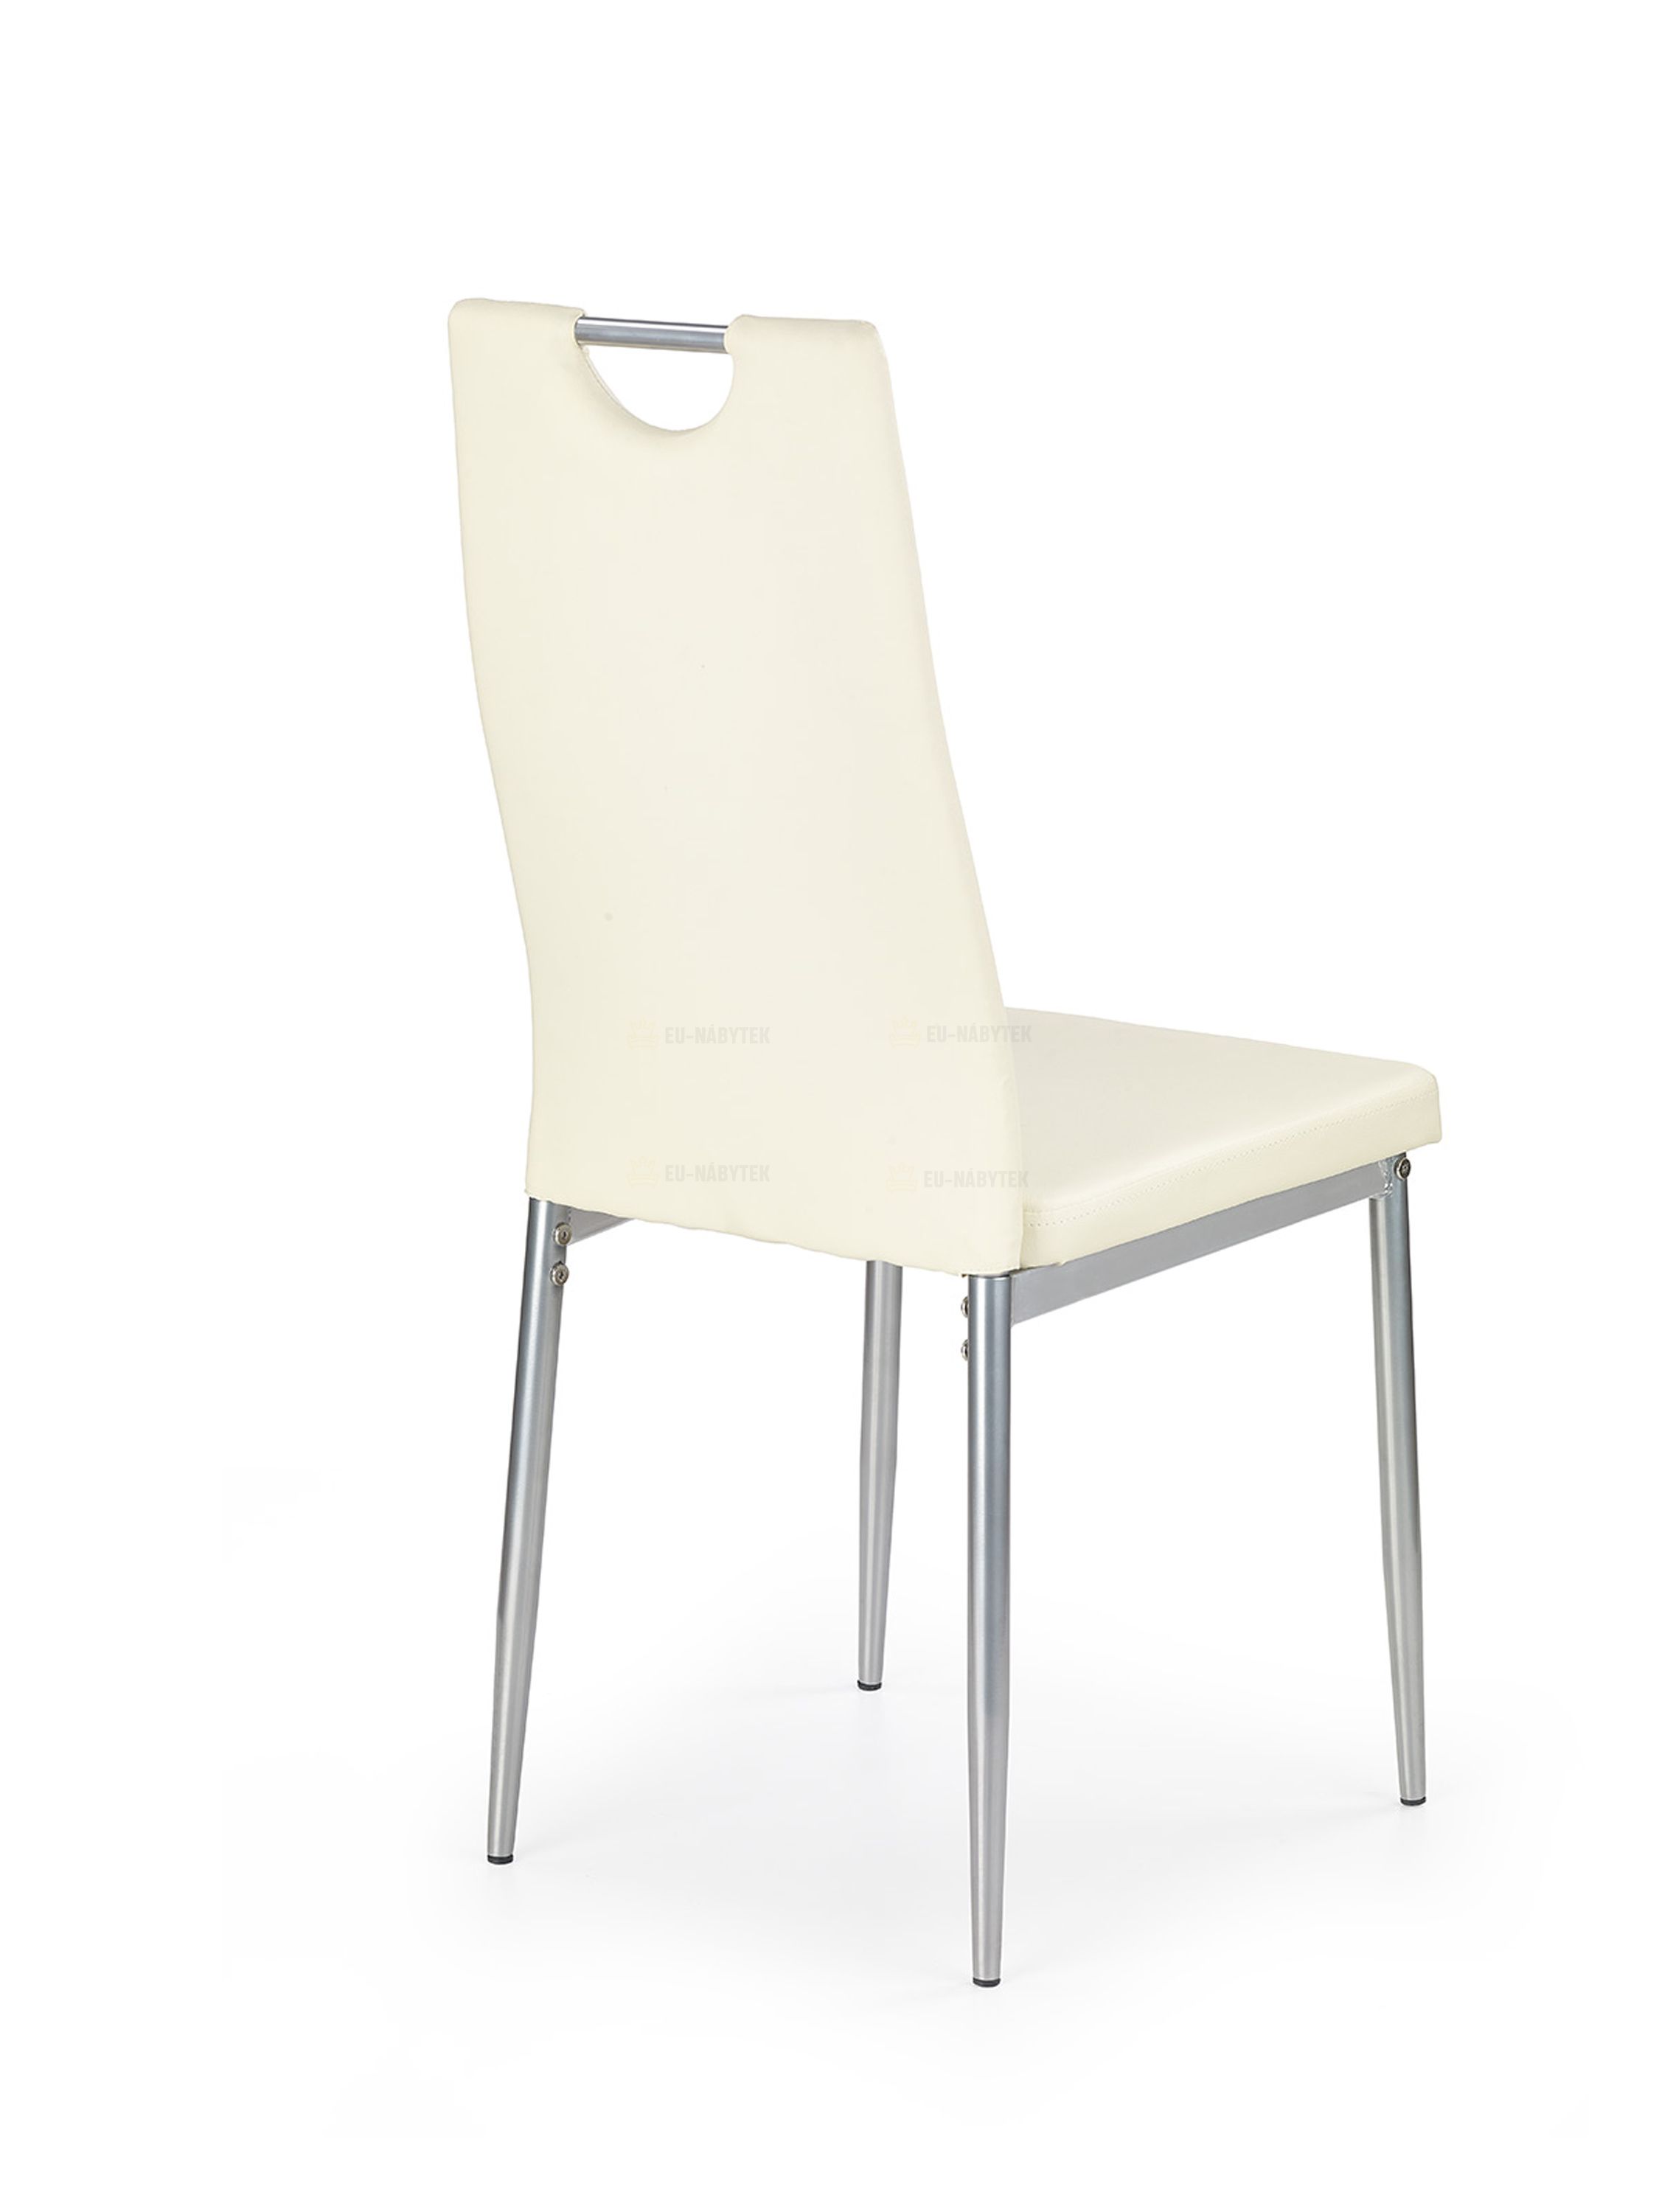 Jídelní židle K202 krémová